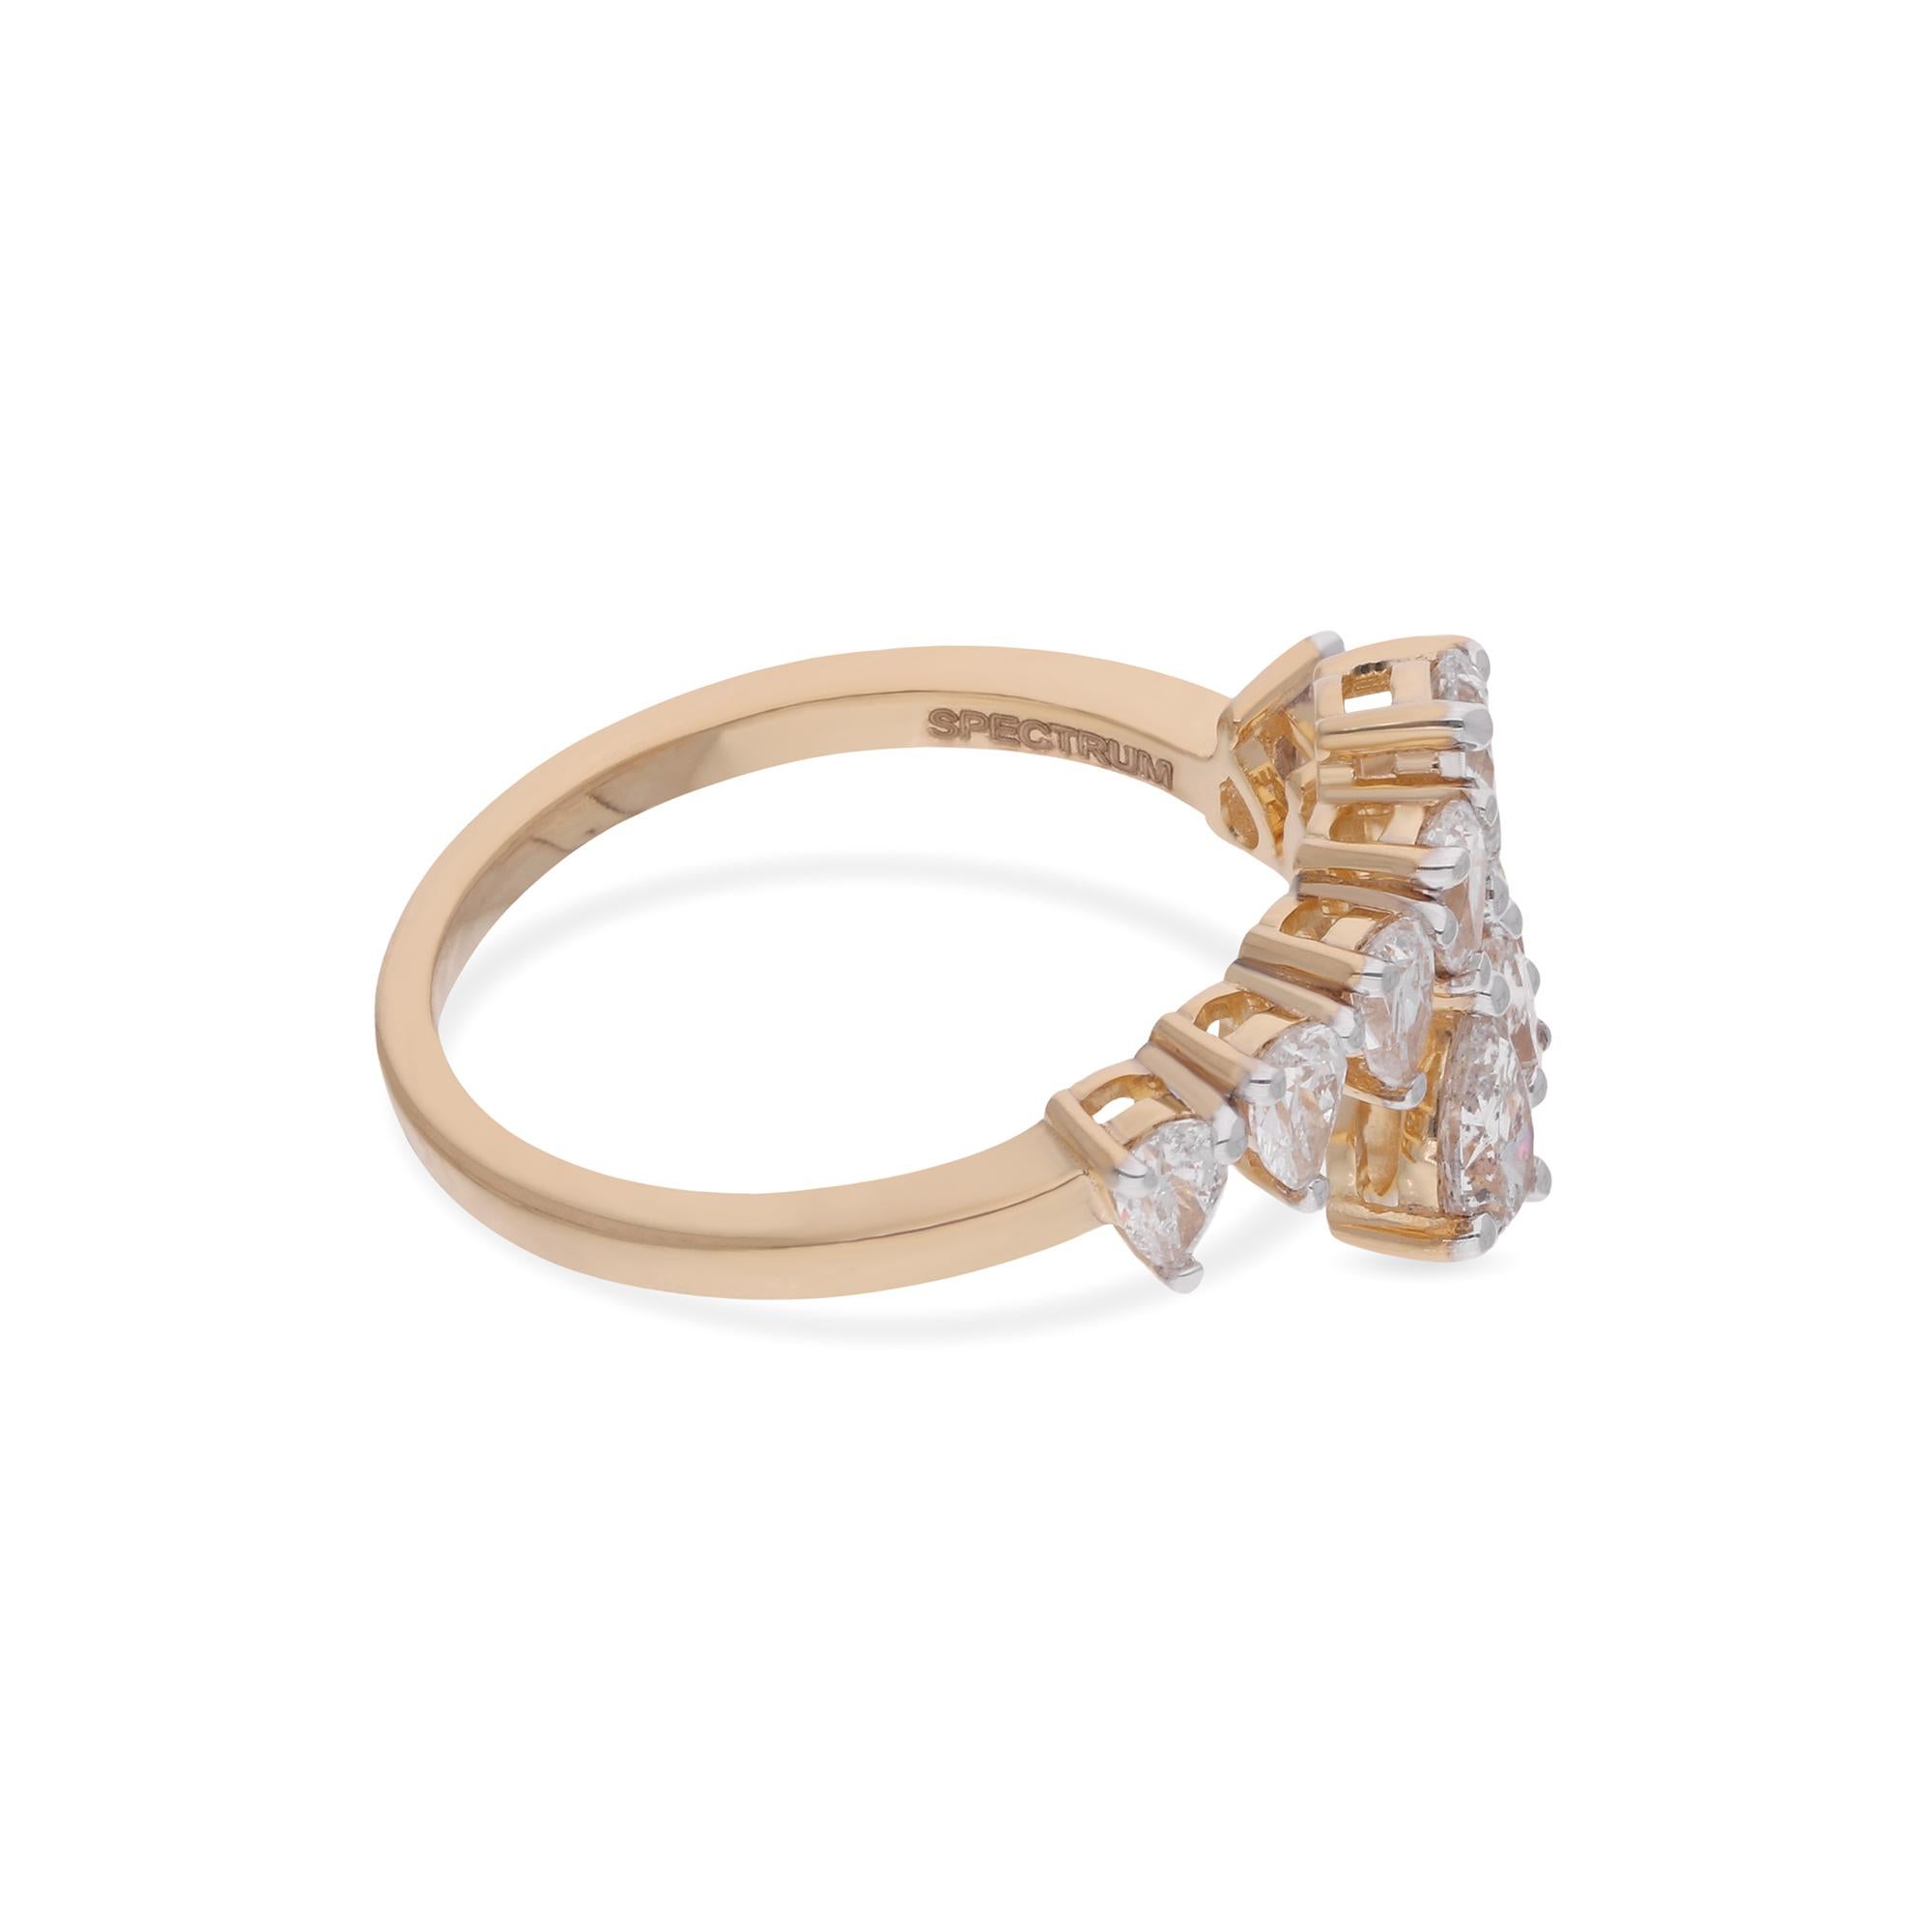 Erhöhen Sie Ihren Stil mit der unaufdringlichen Raffinesse dieses exquisiten 0,9-Karat-Diamantringes mit SI-Reinheit und H-I-Farbe, gefasst in strahlendem 14-karätigem Gelbgold. Dieser mit Präzision und Liebe zum Detail gefertigte Ring ist ein